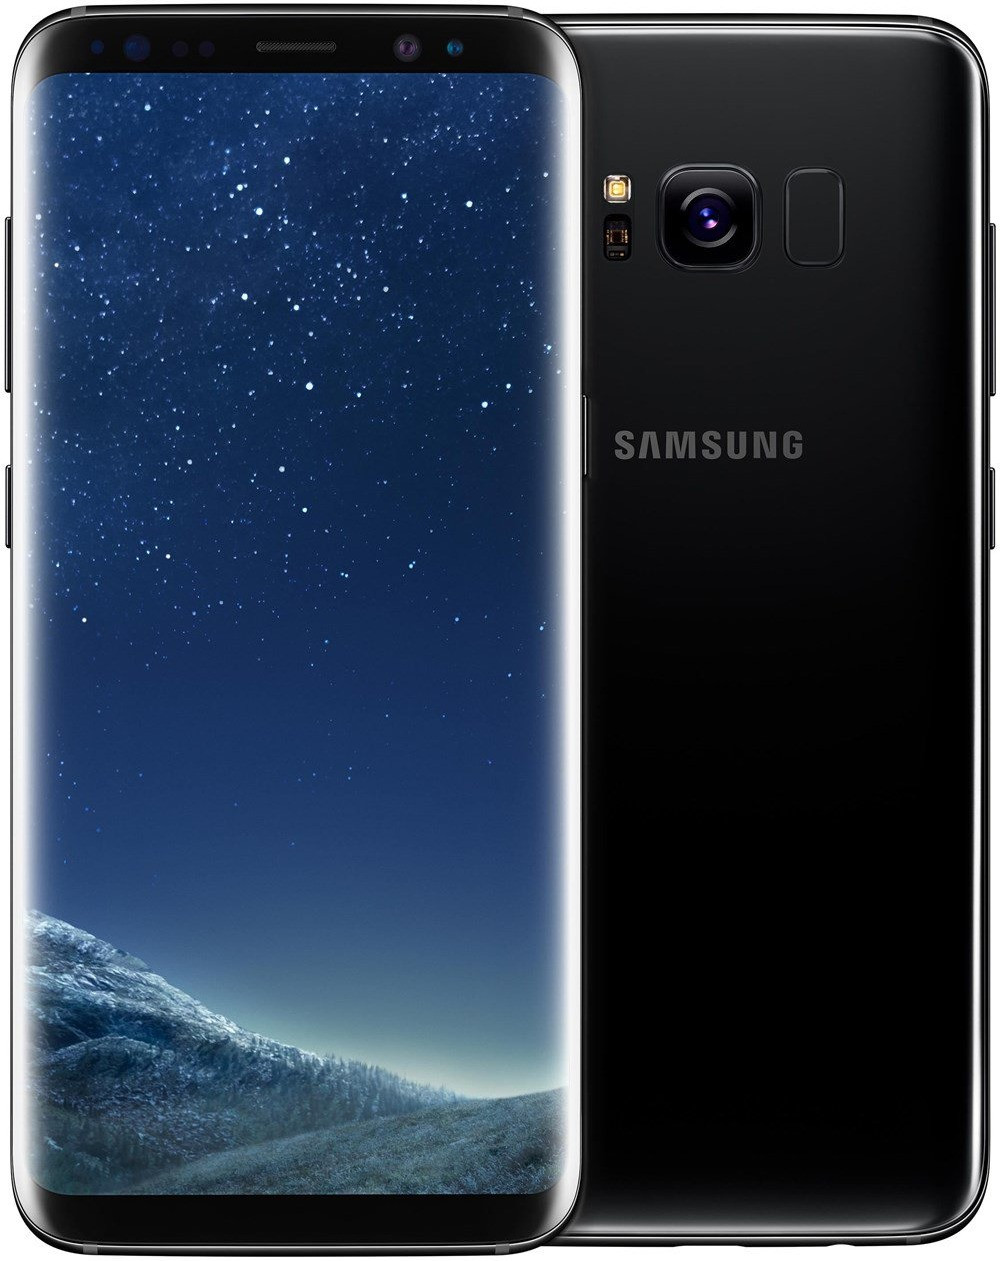 Samsung Galaxy S8 Midnight Black